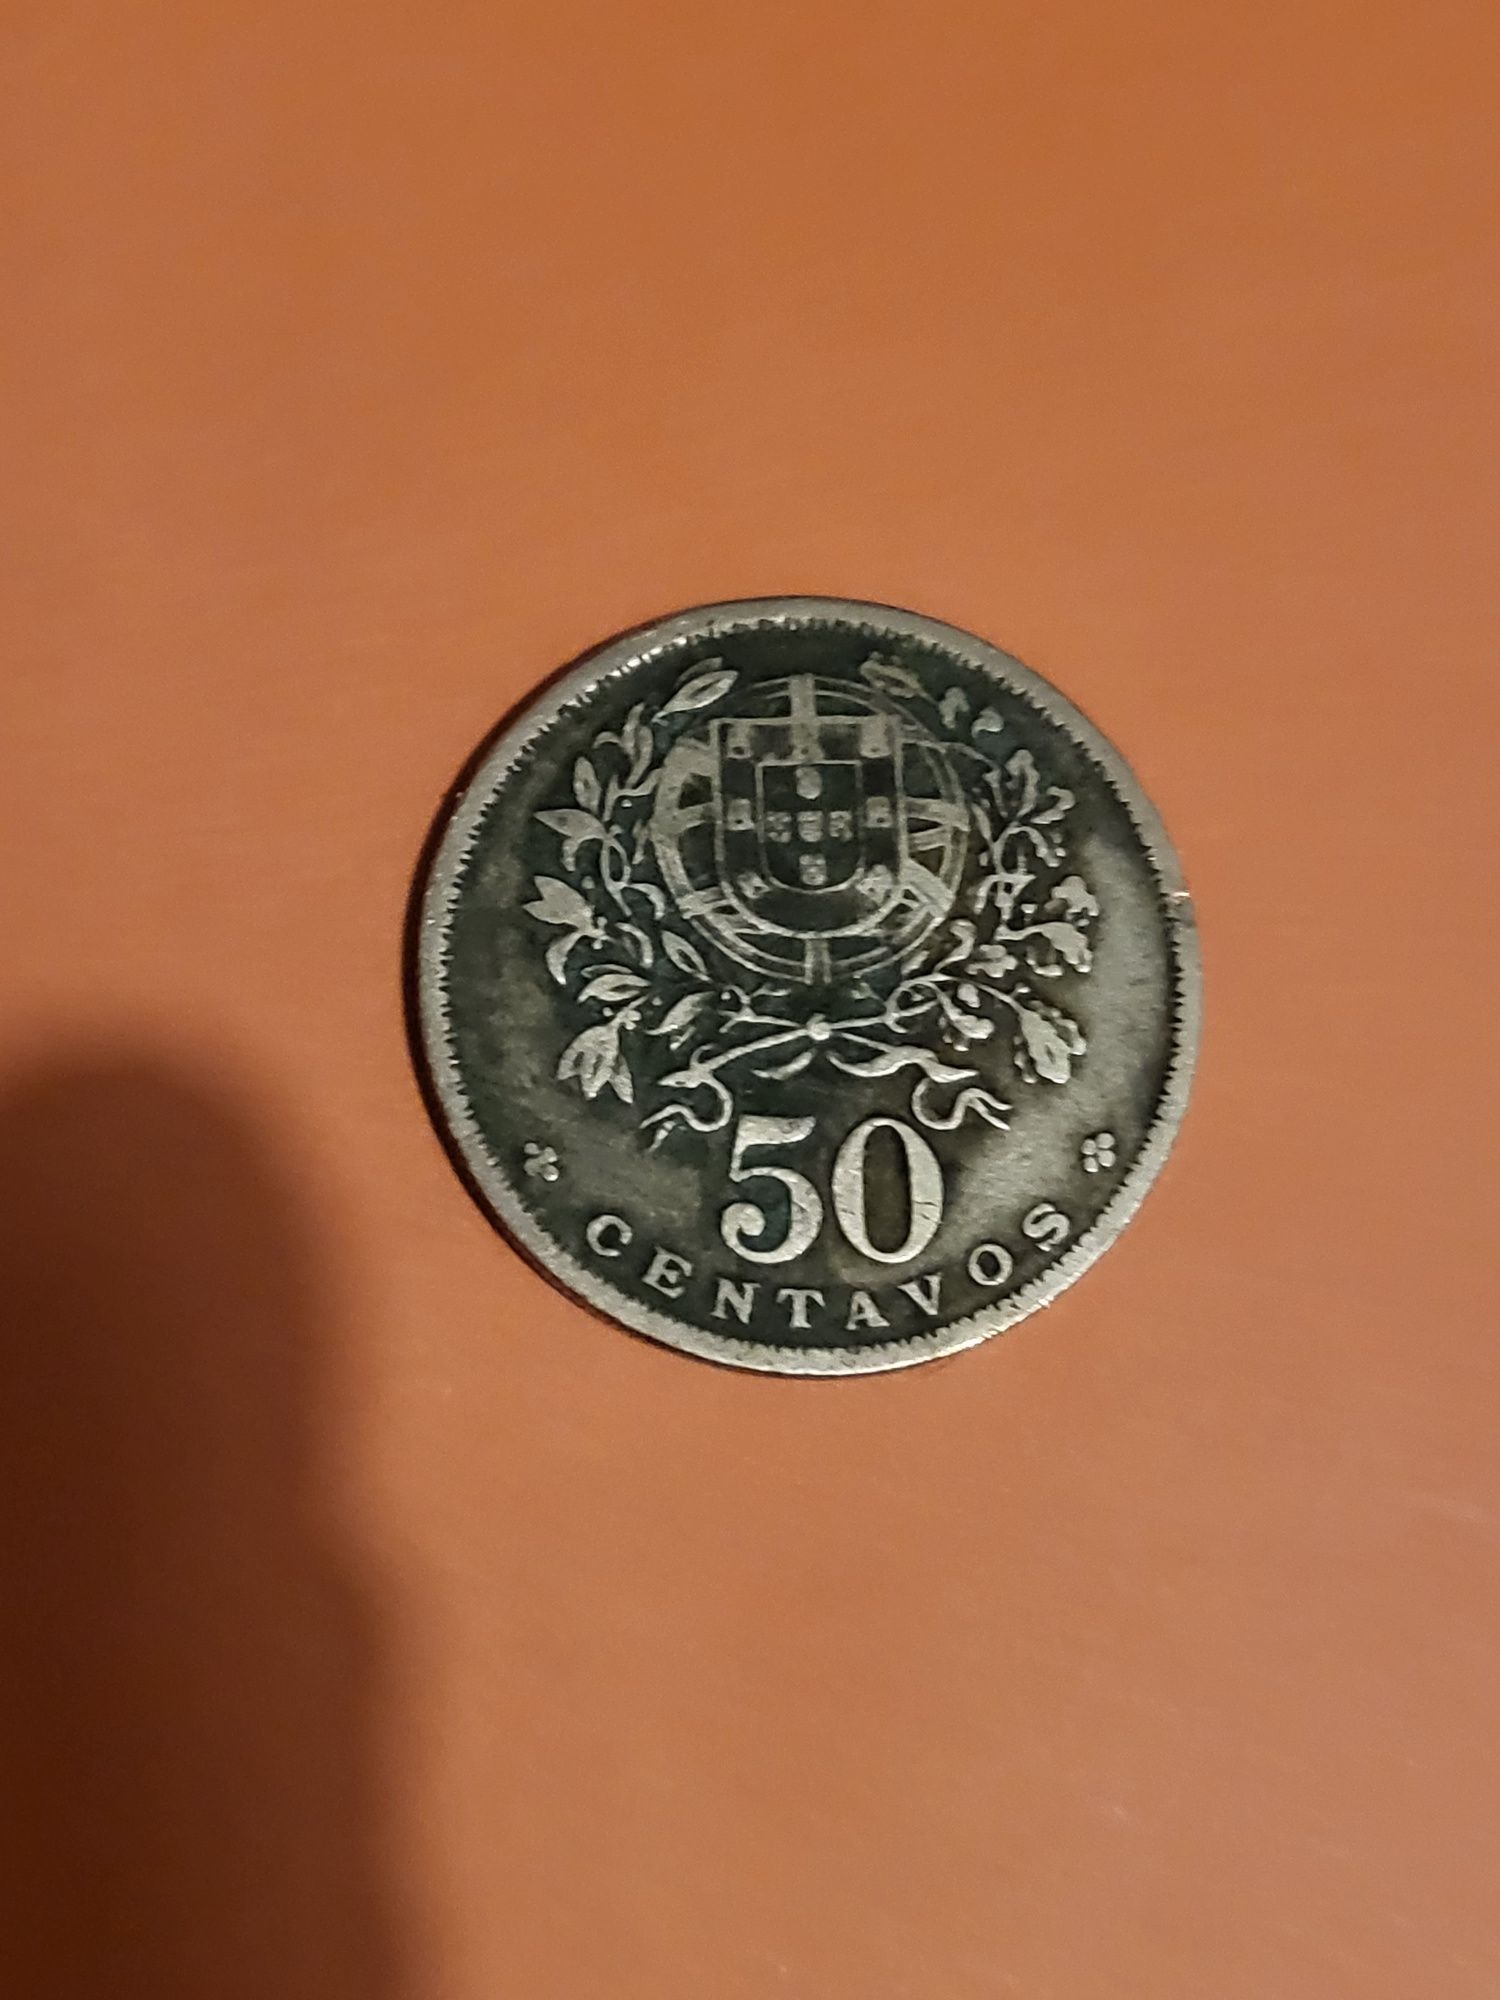 Vendo lote de cerca de 1000 moedas antigas